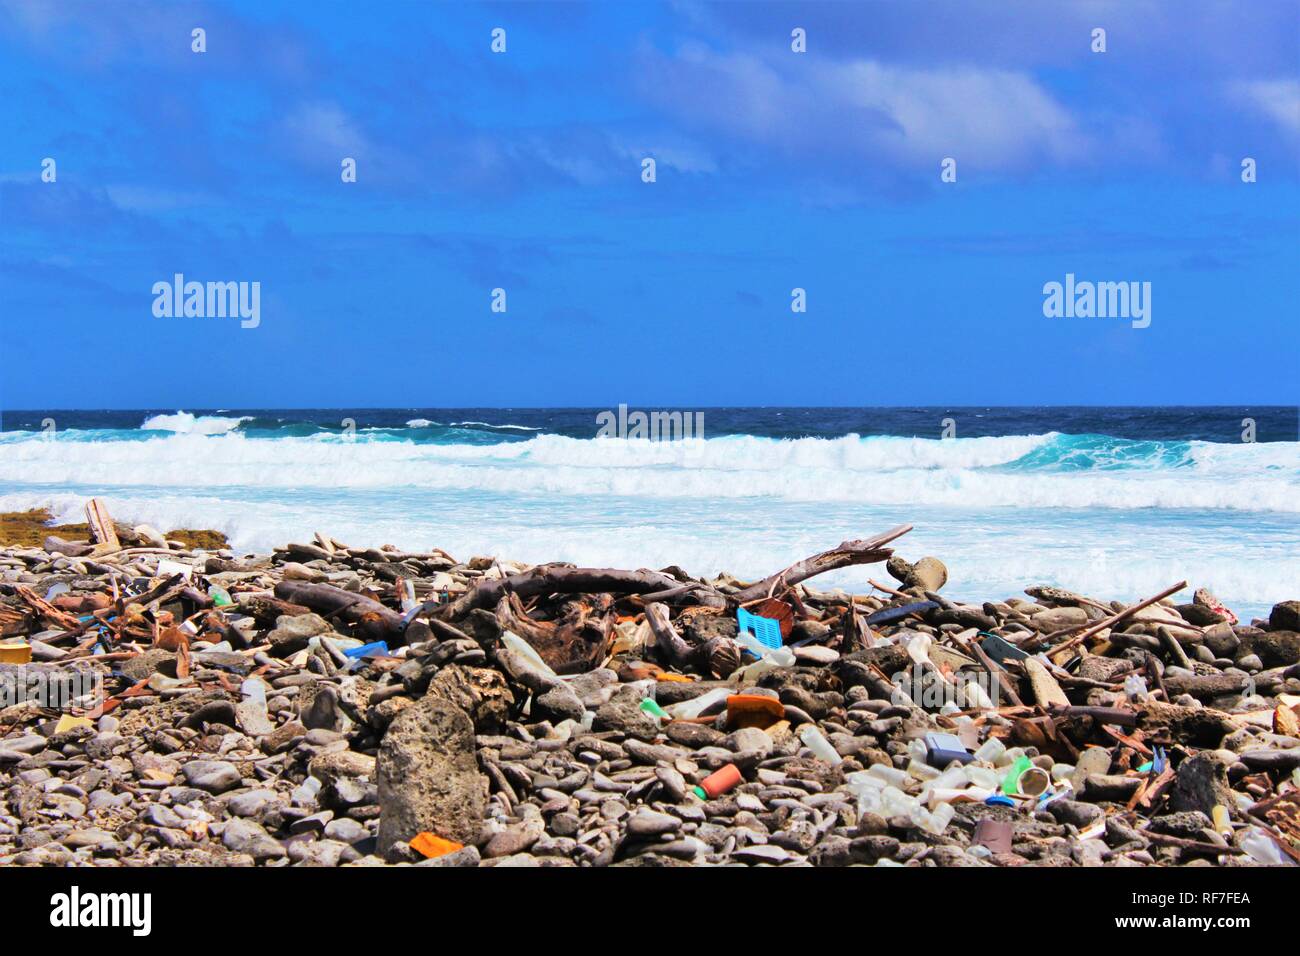 Déchets échoués sur l'île de Bonaire, de la pollution de l'océan des Caraïbes. La pollution plastique dans les océans est un problème mondial croissant. Banque D'Images